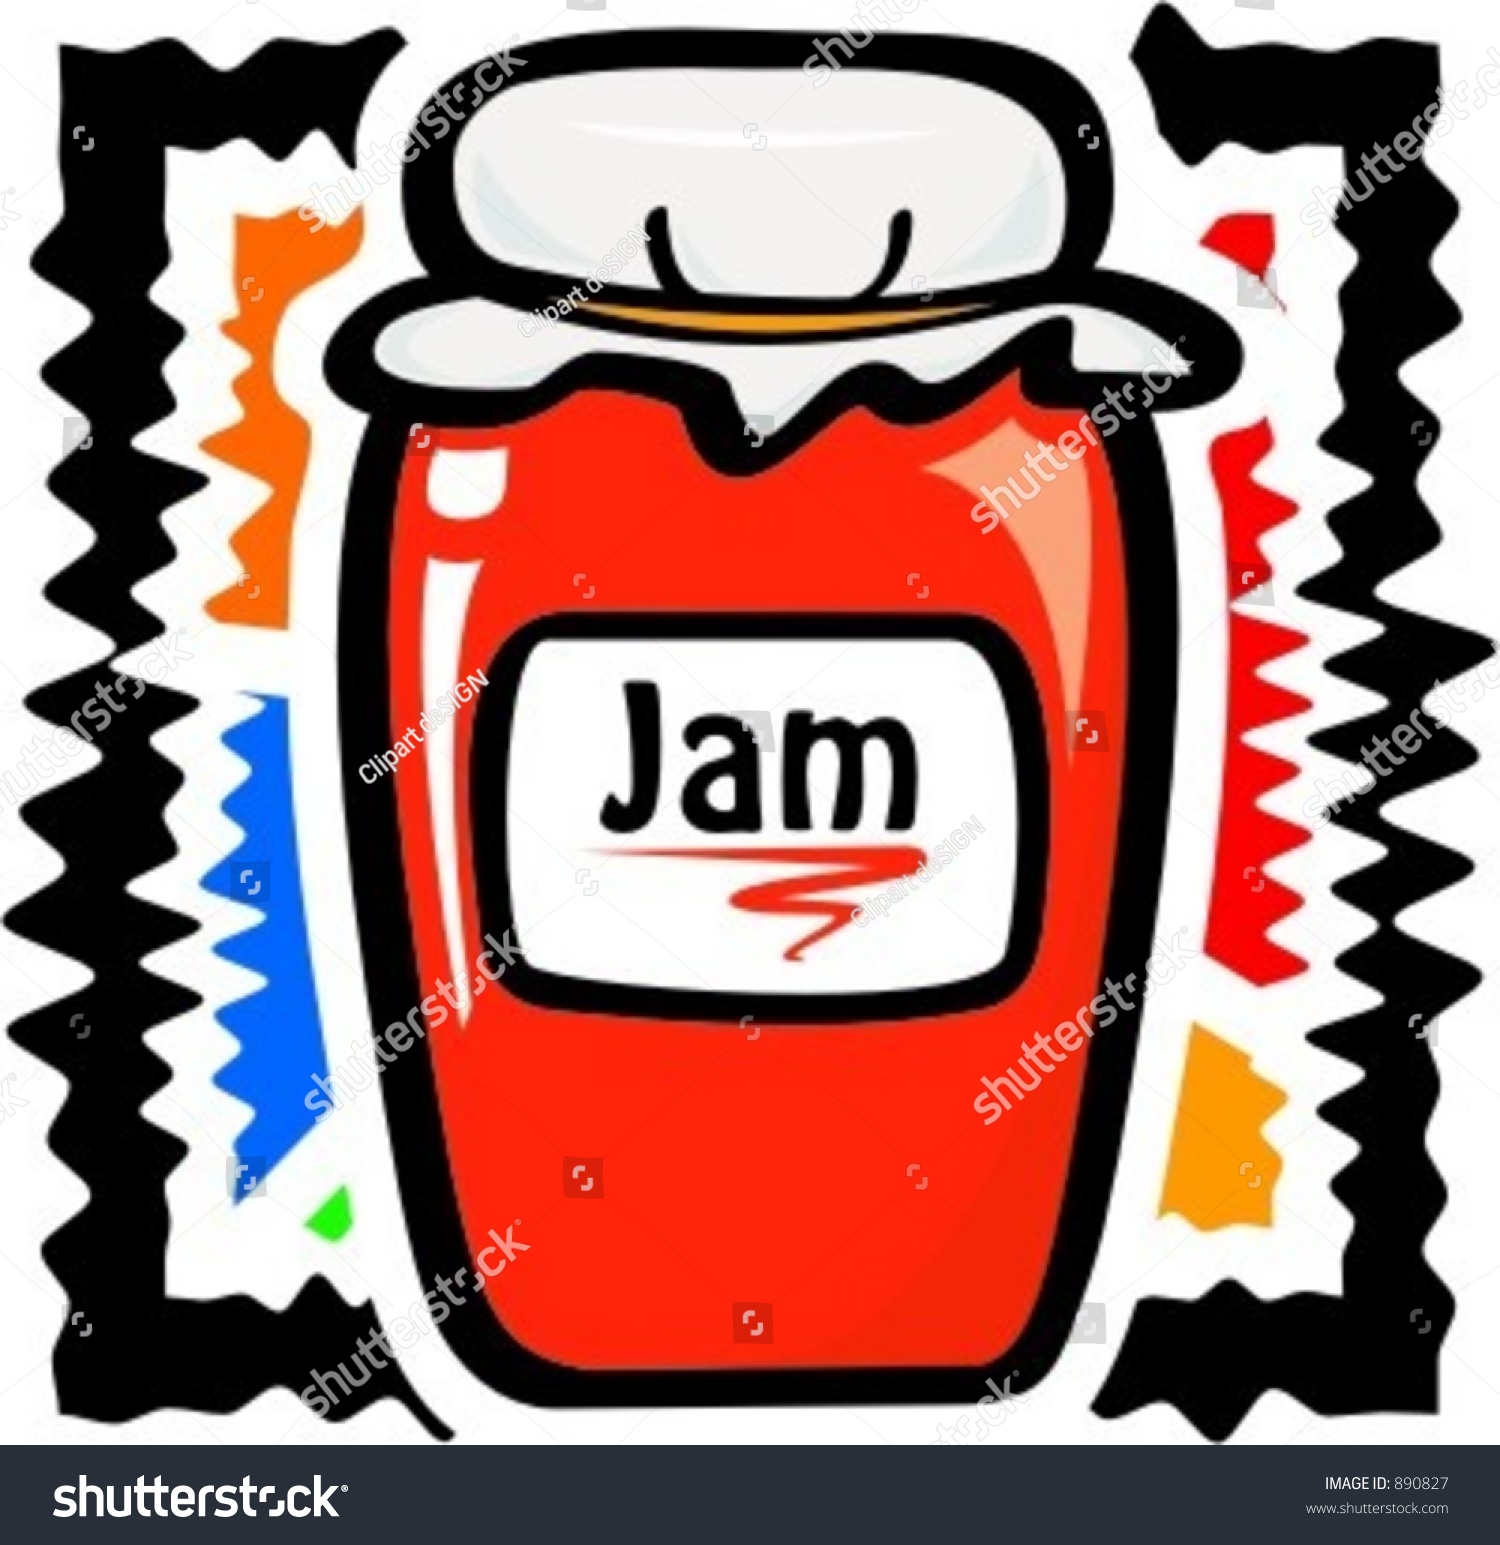 Jar Jam Vector Illustration Stock Vector 890827 - Shutterstock